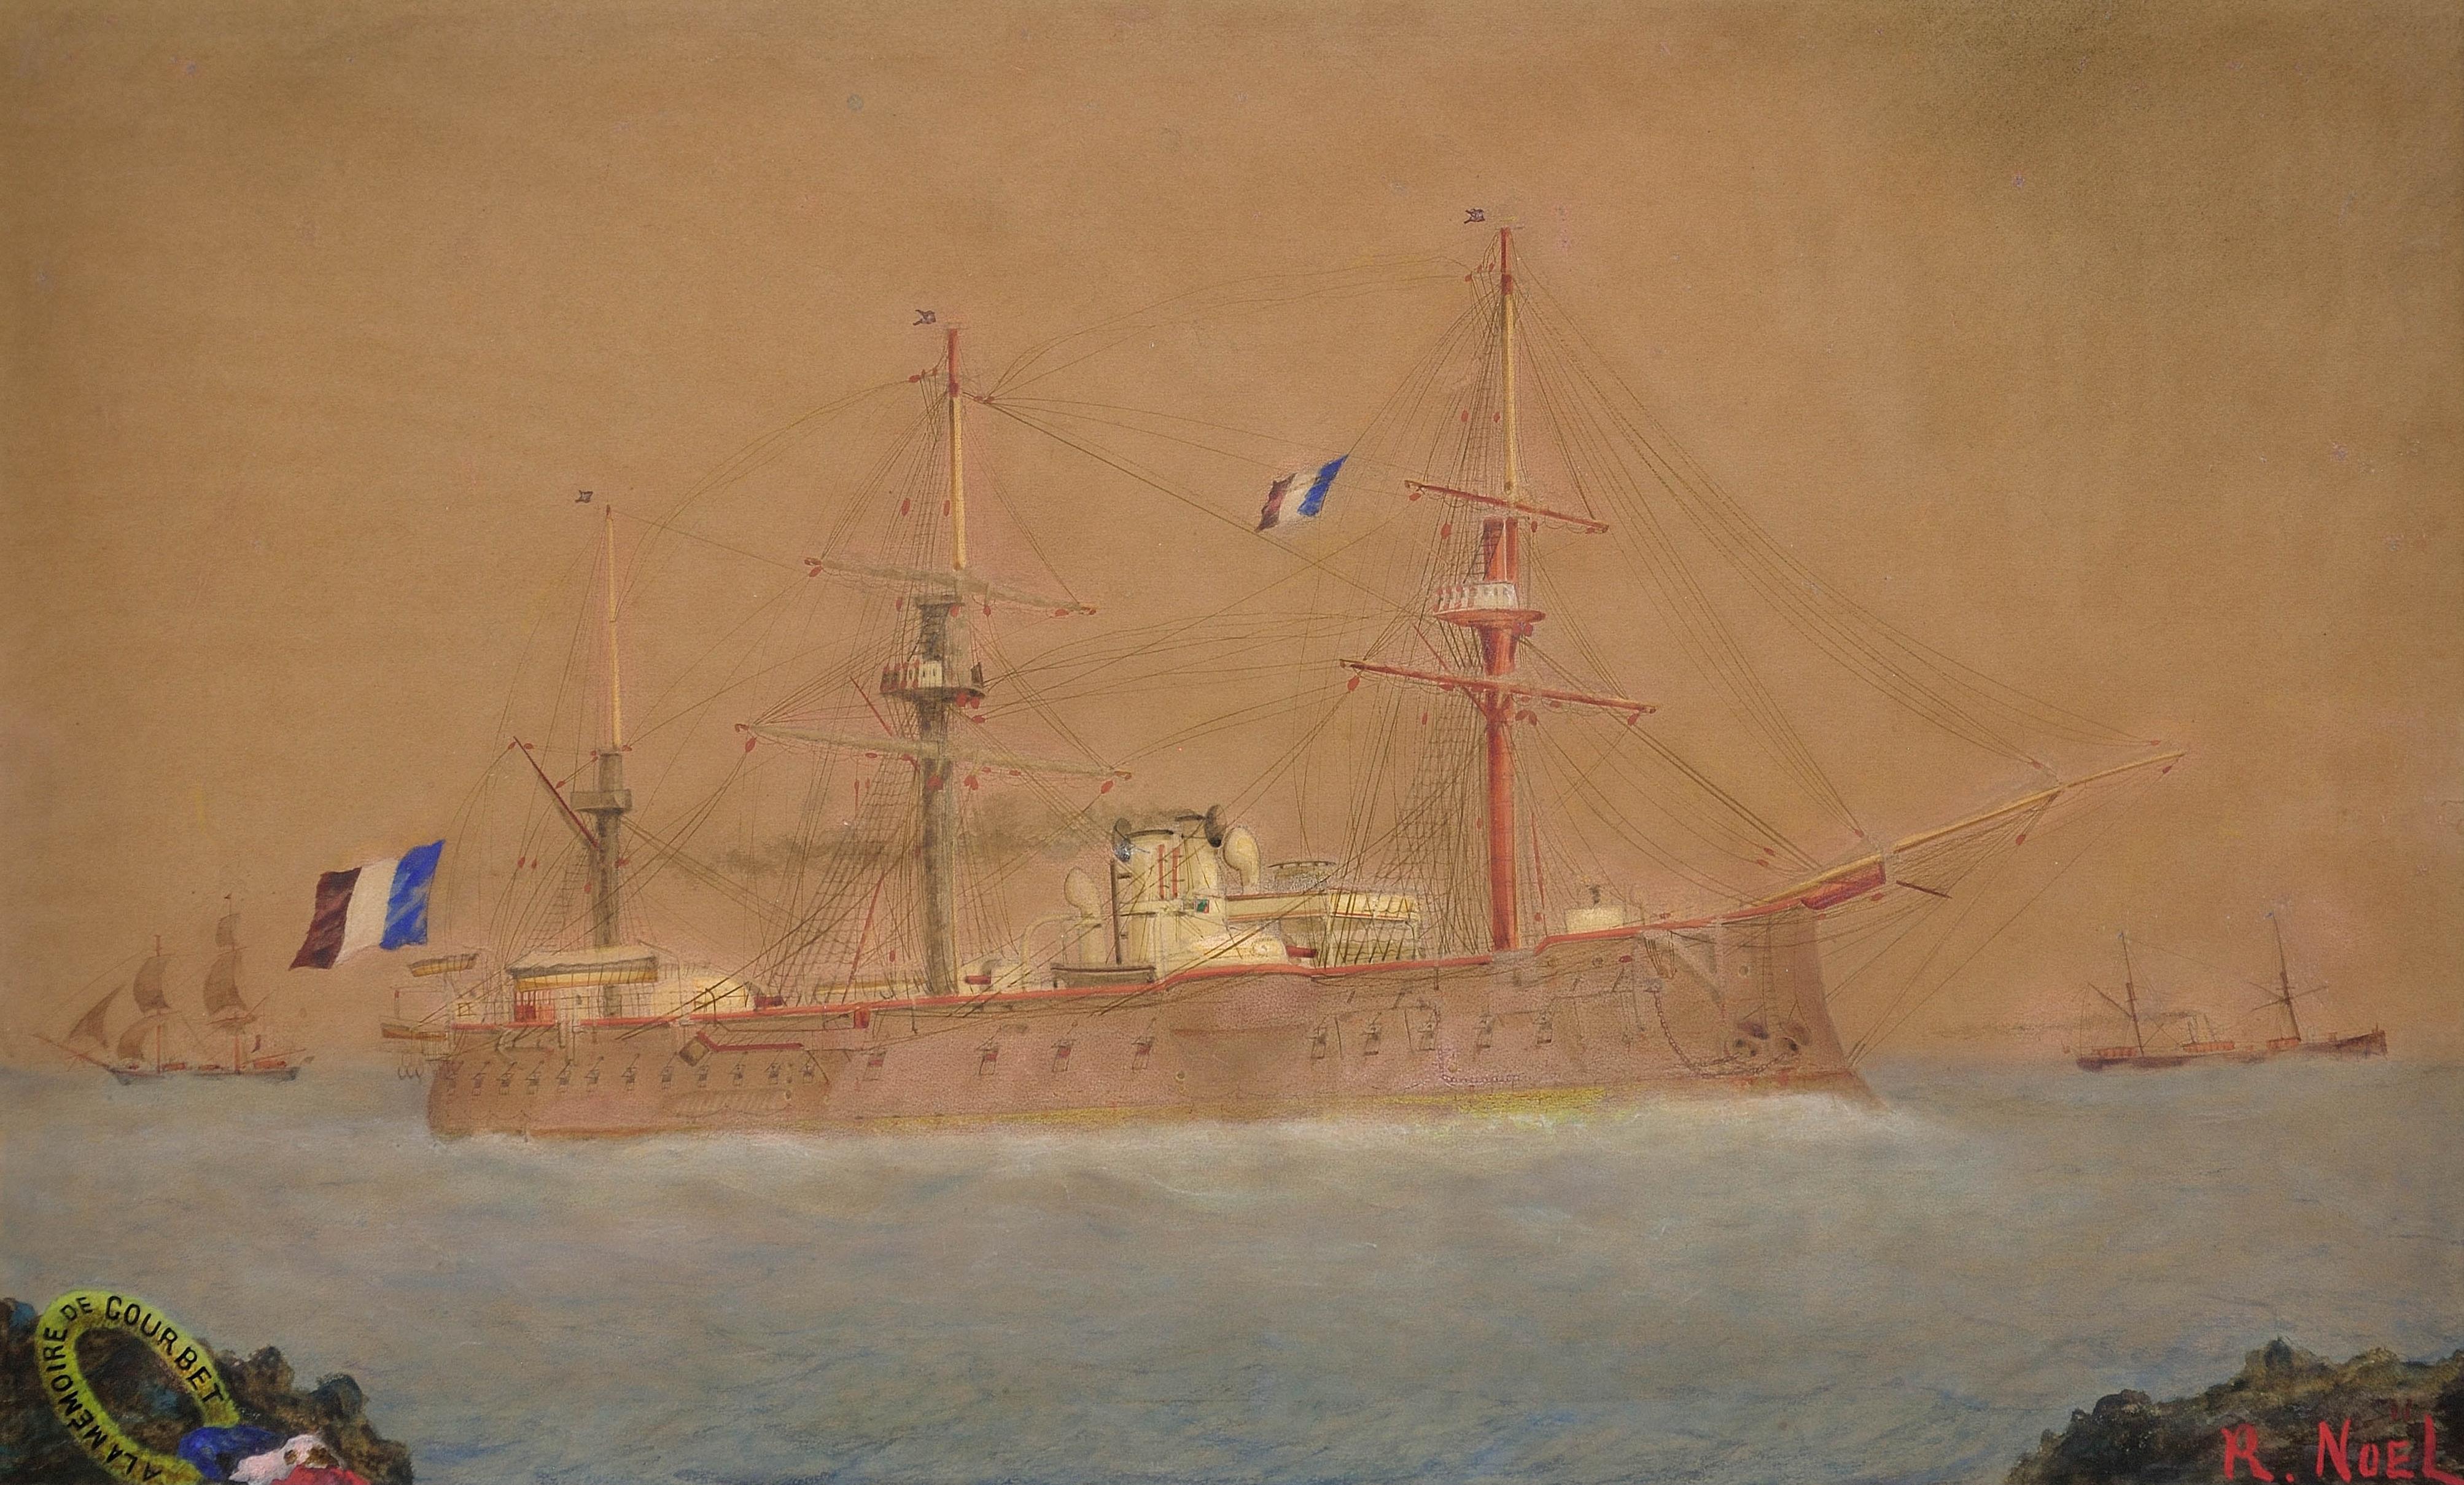 Chariot de bataille de la marine française Courbet L'hommage sentimental d'un marin. - Art de Unknown